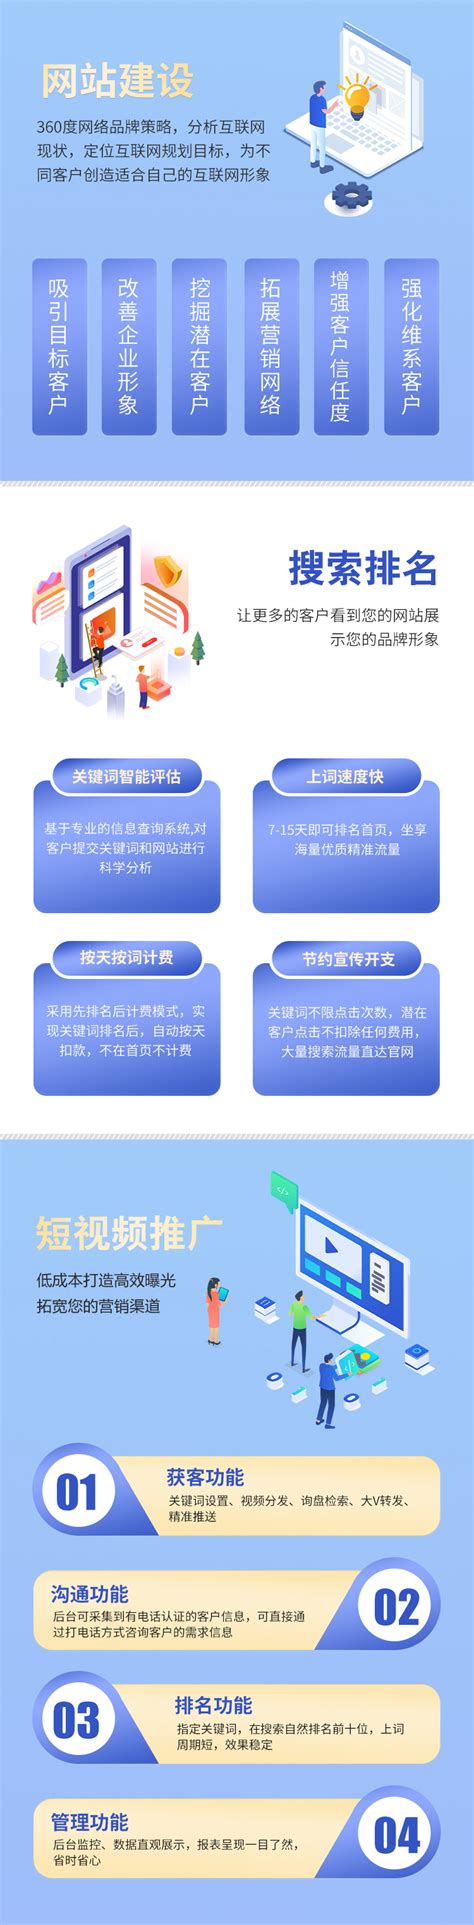 广东网站建设及推广公司